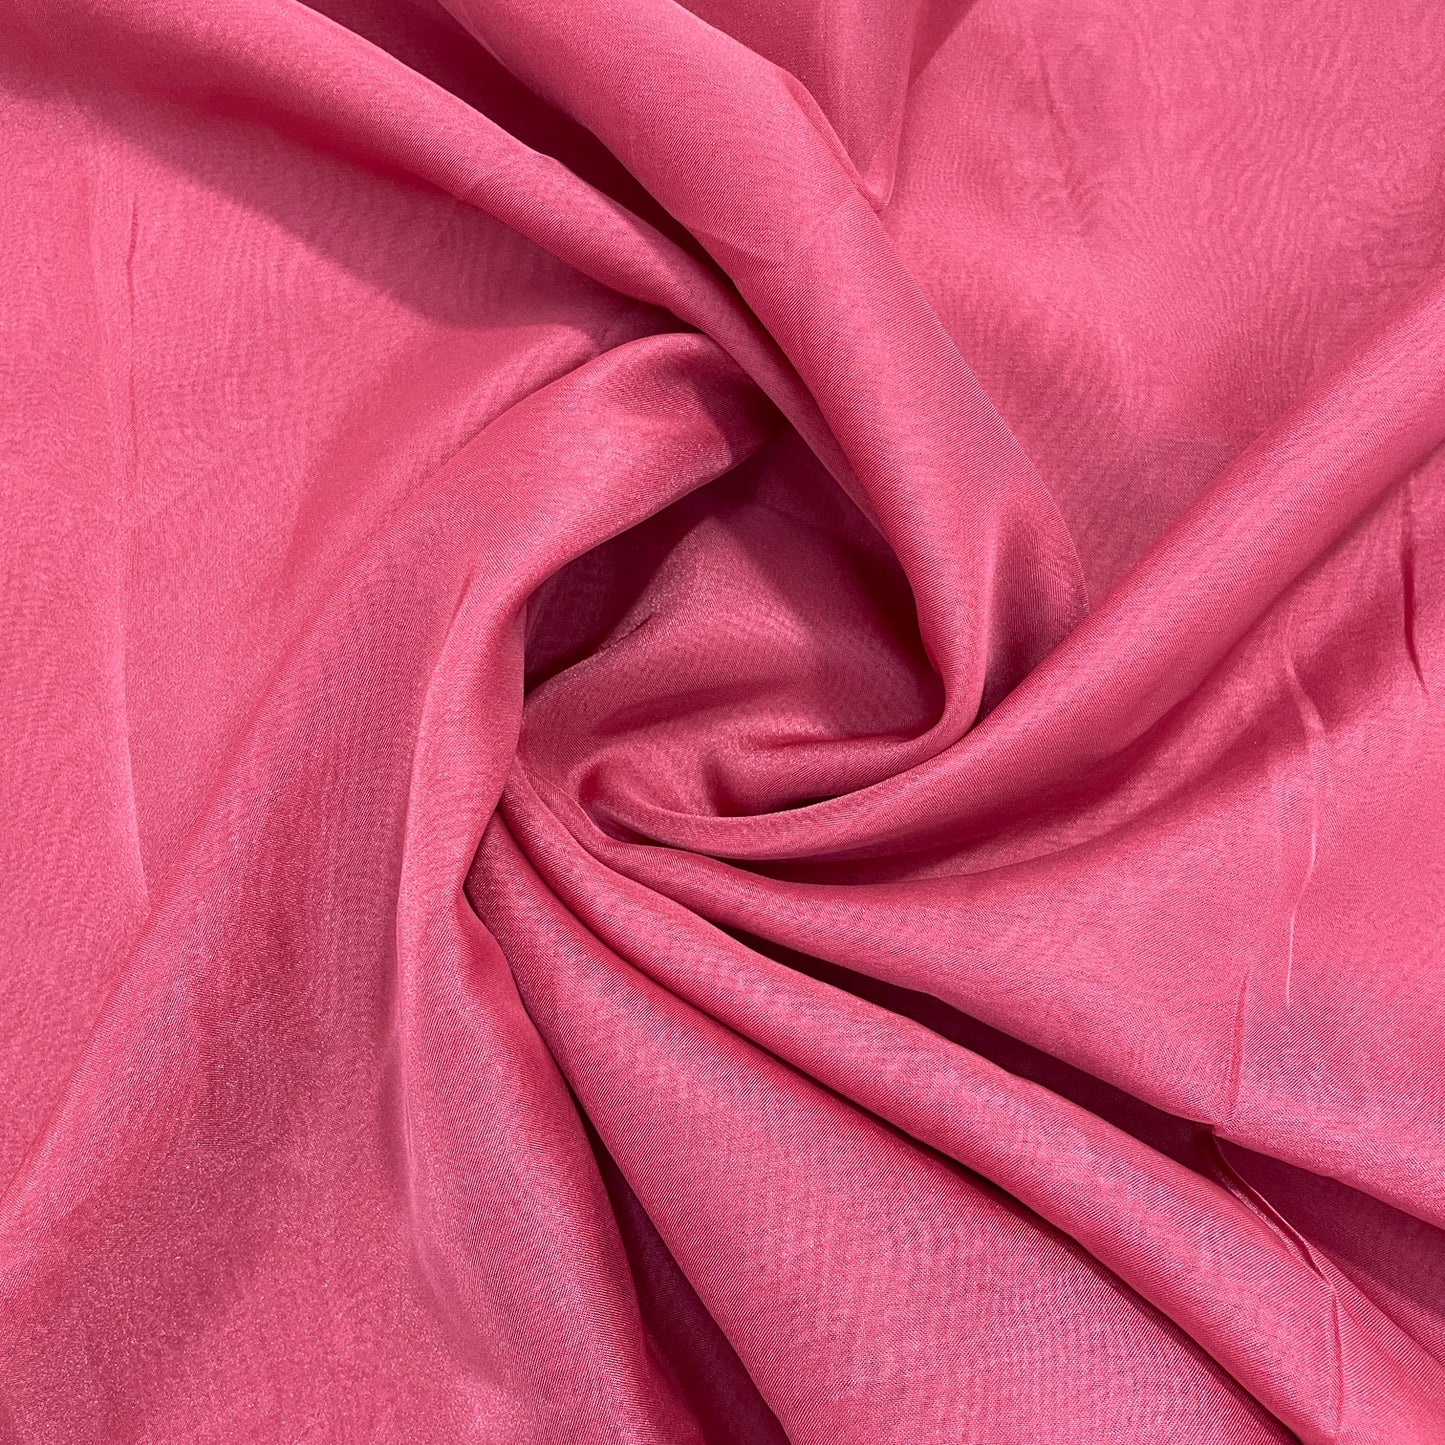 Exclusive Corel Pink Solid Organza Fabric